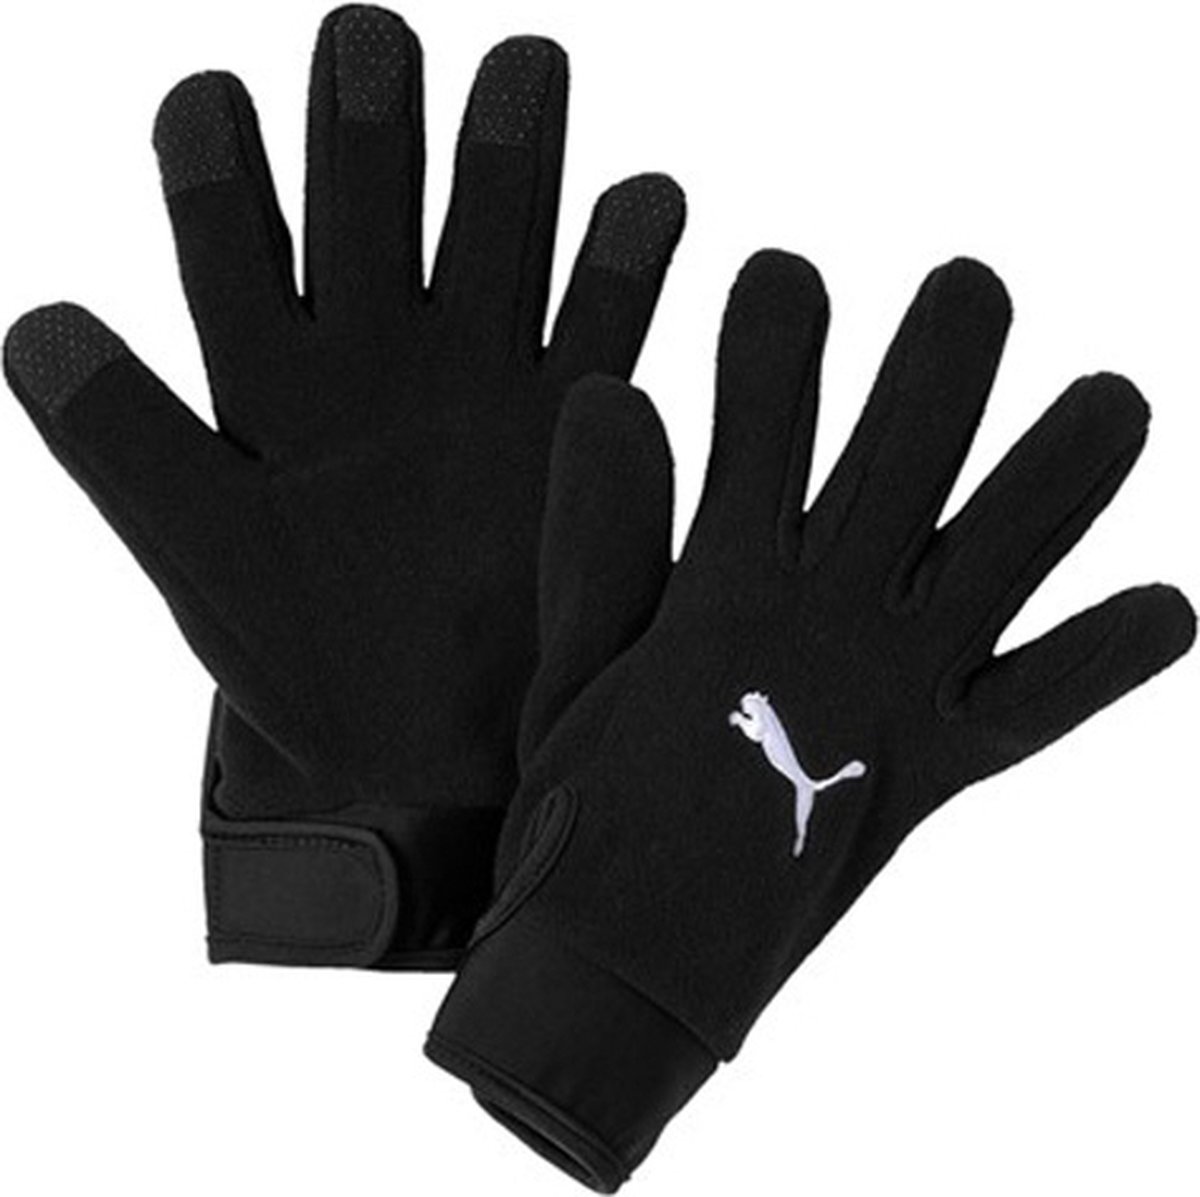 Puma handschoenen 'Liga' - maat L/XL - zwart